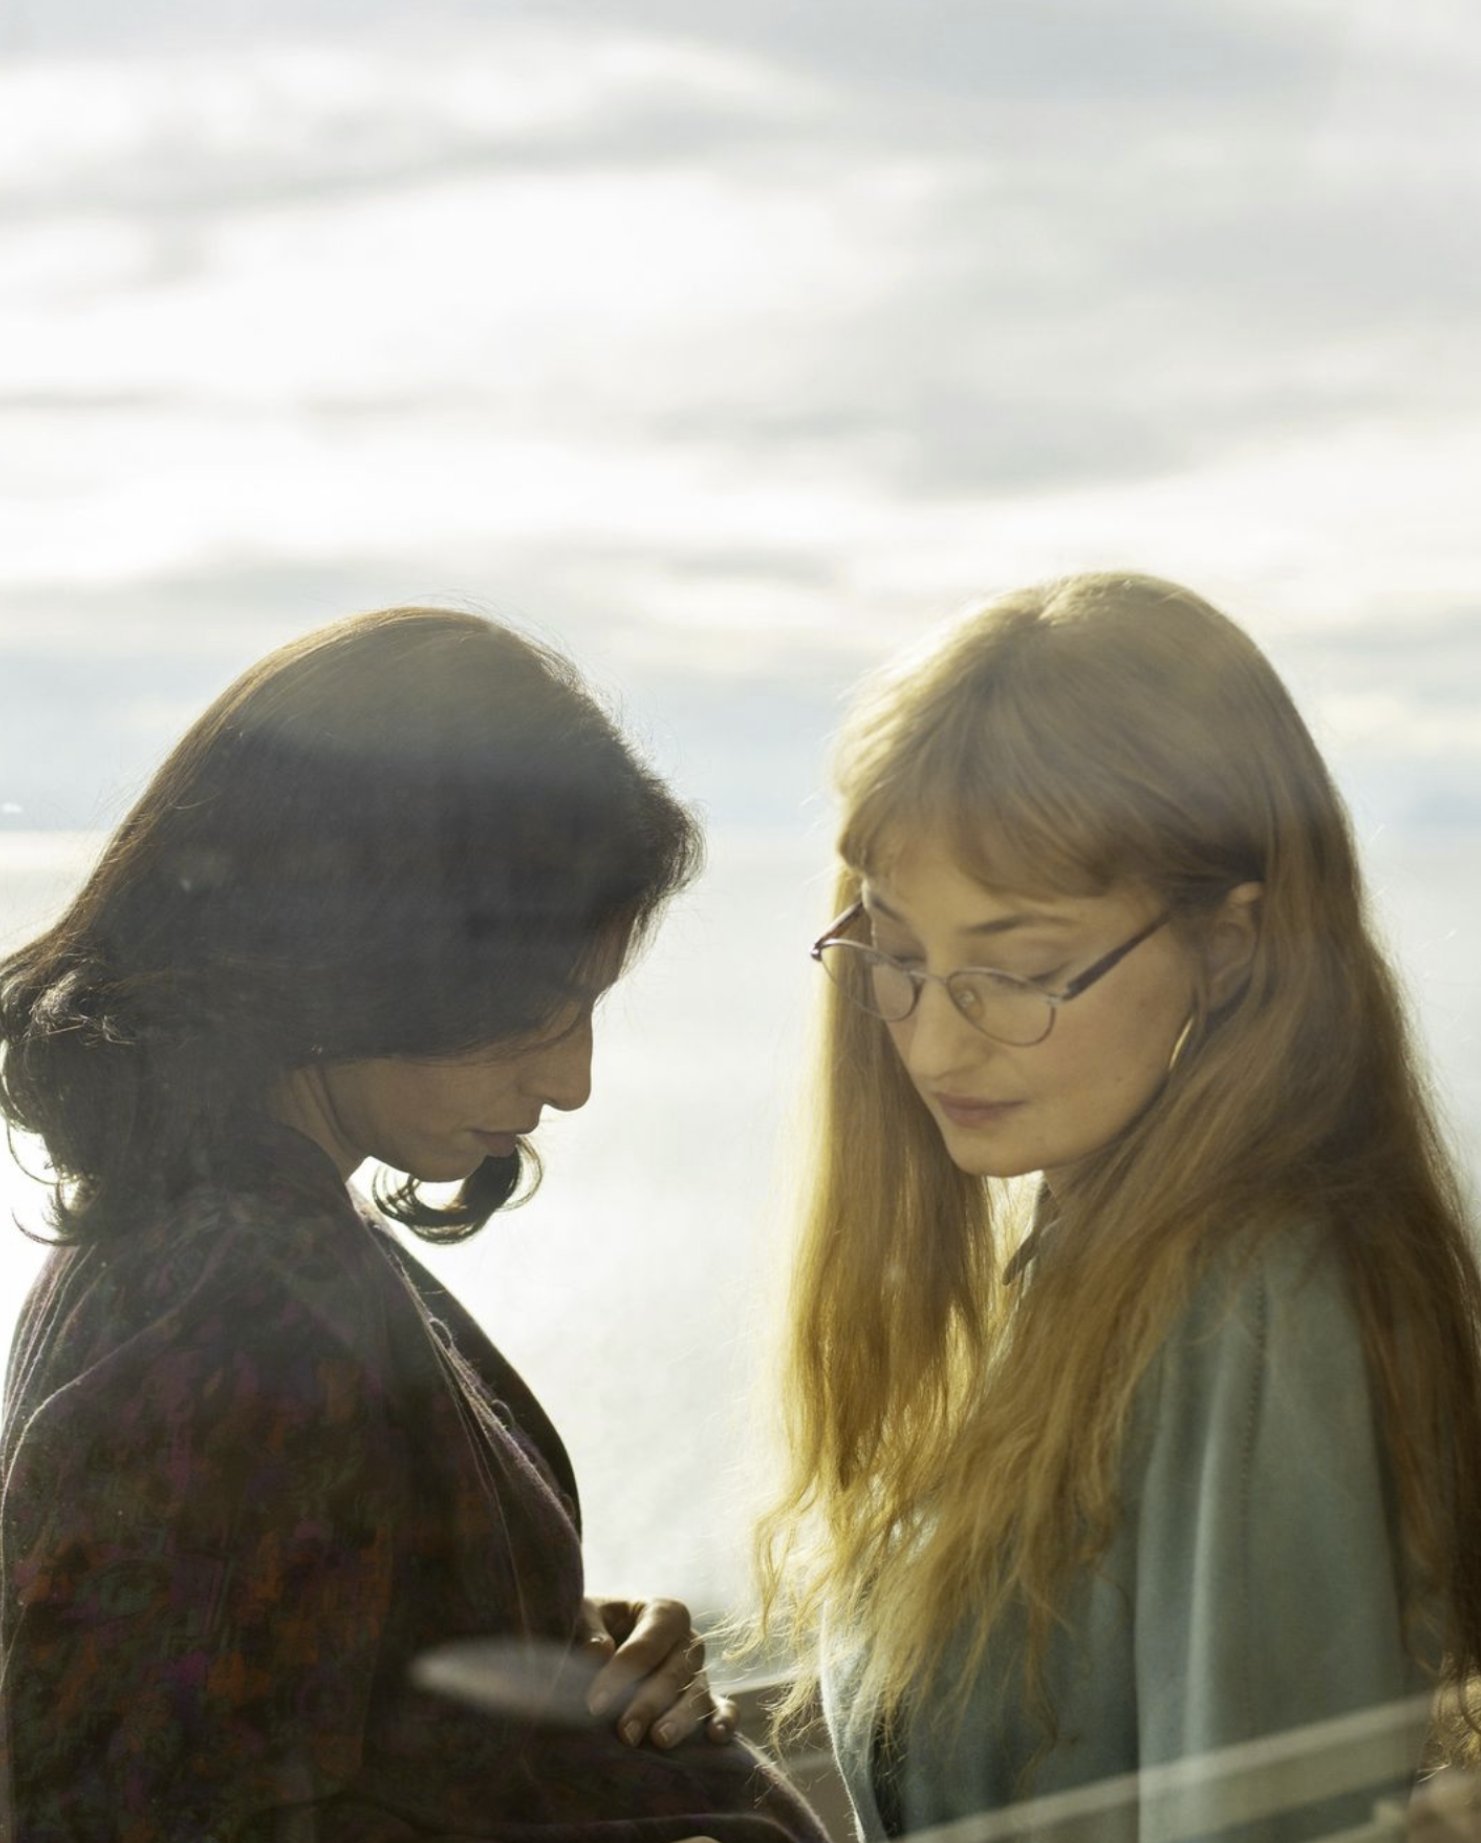 L'amica geniale 4: la prima immagine di Irene Maiorino e Alba Rohrwacher nei panni di Lila e Elena in Storia della bambina perduta